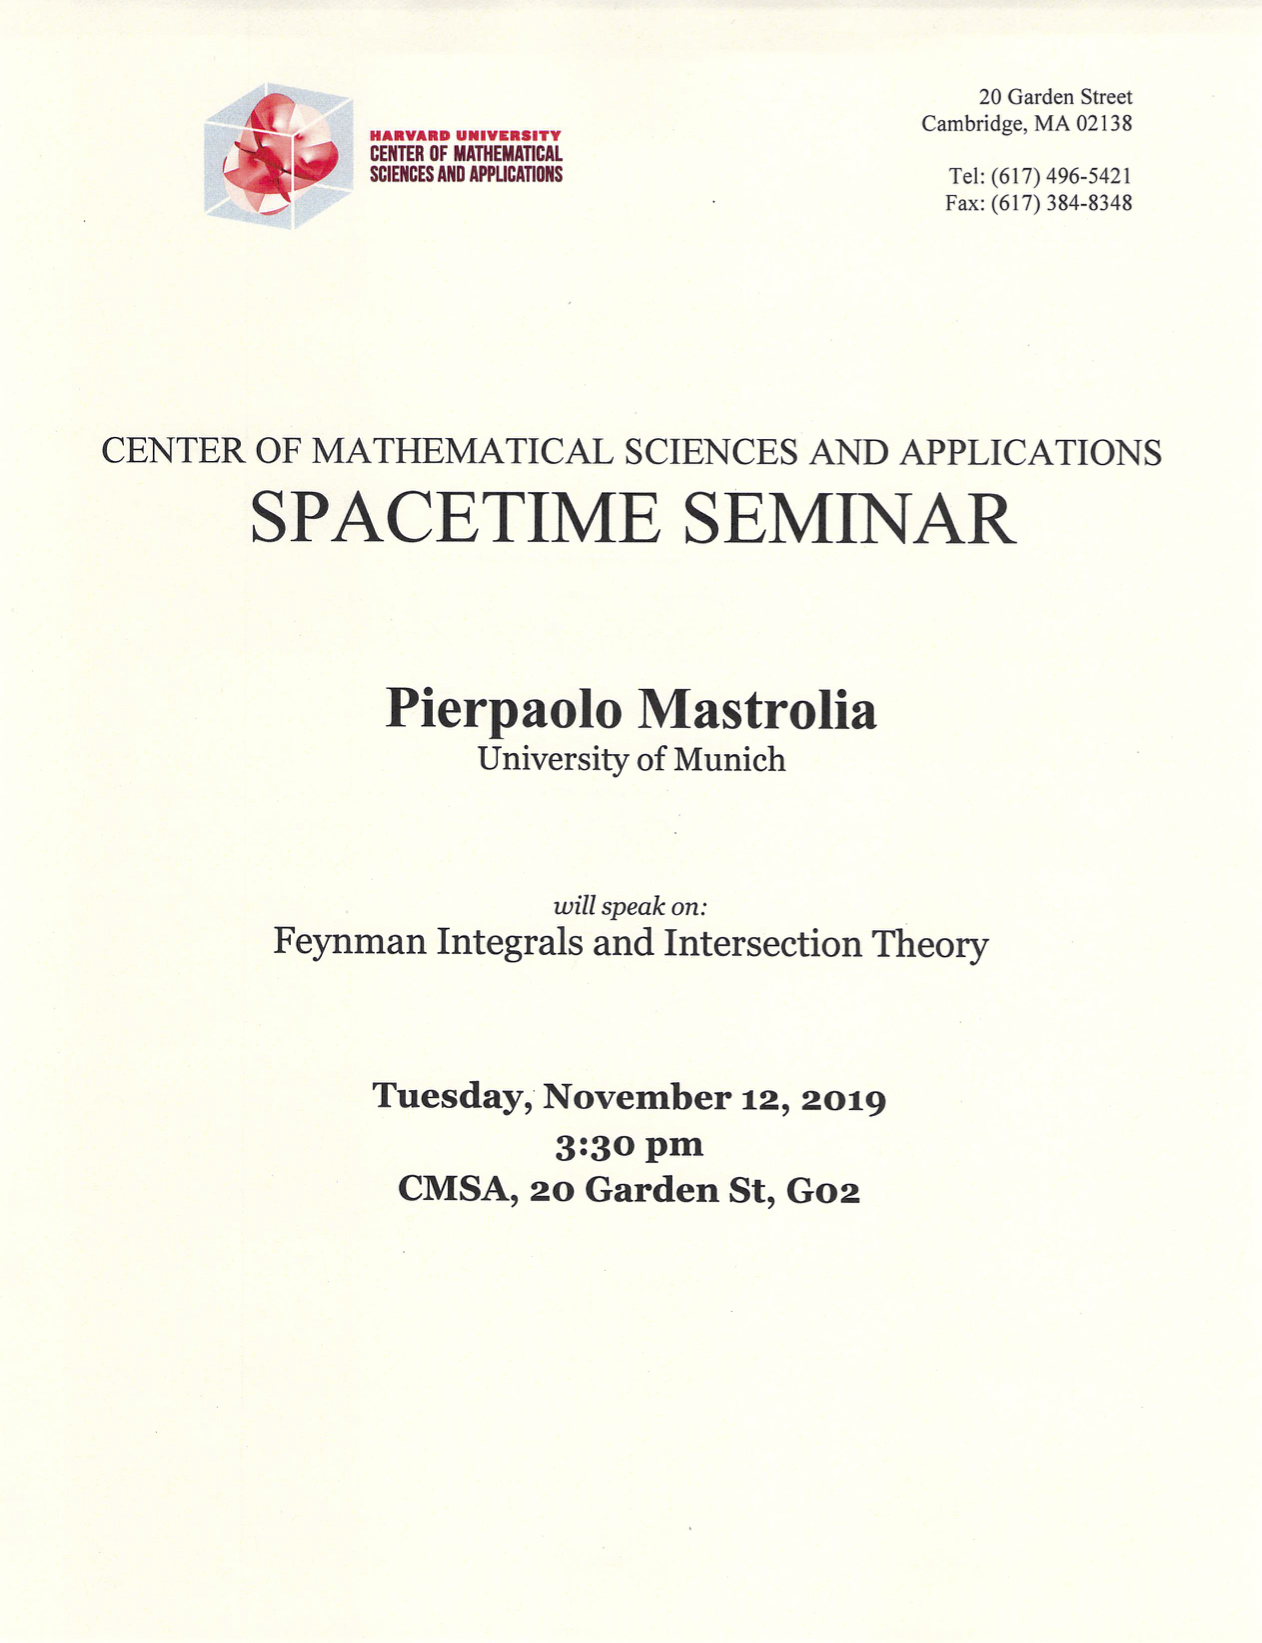 11/12/2019 Spacetime Seminar